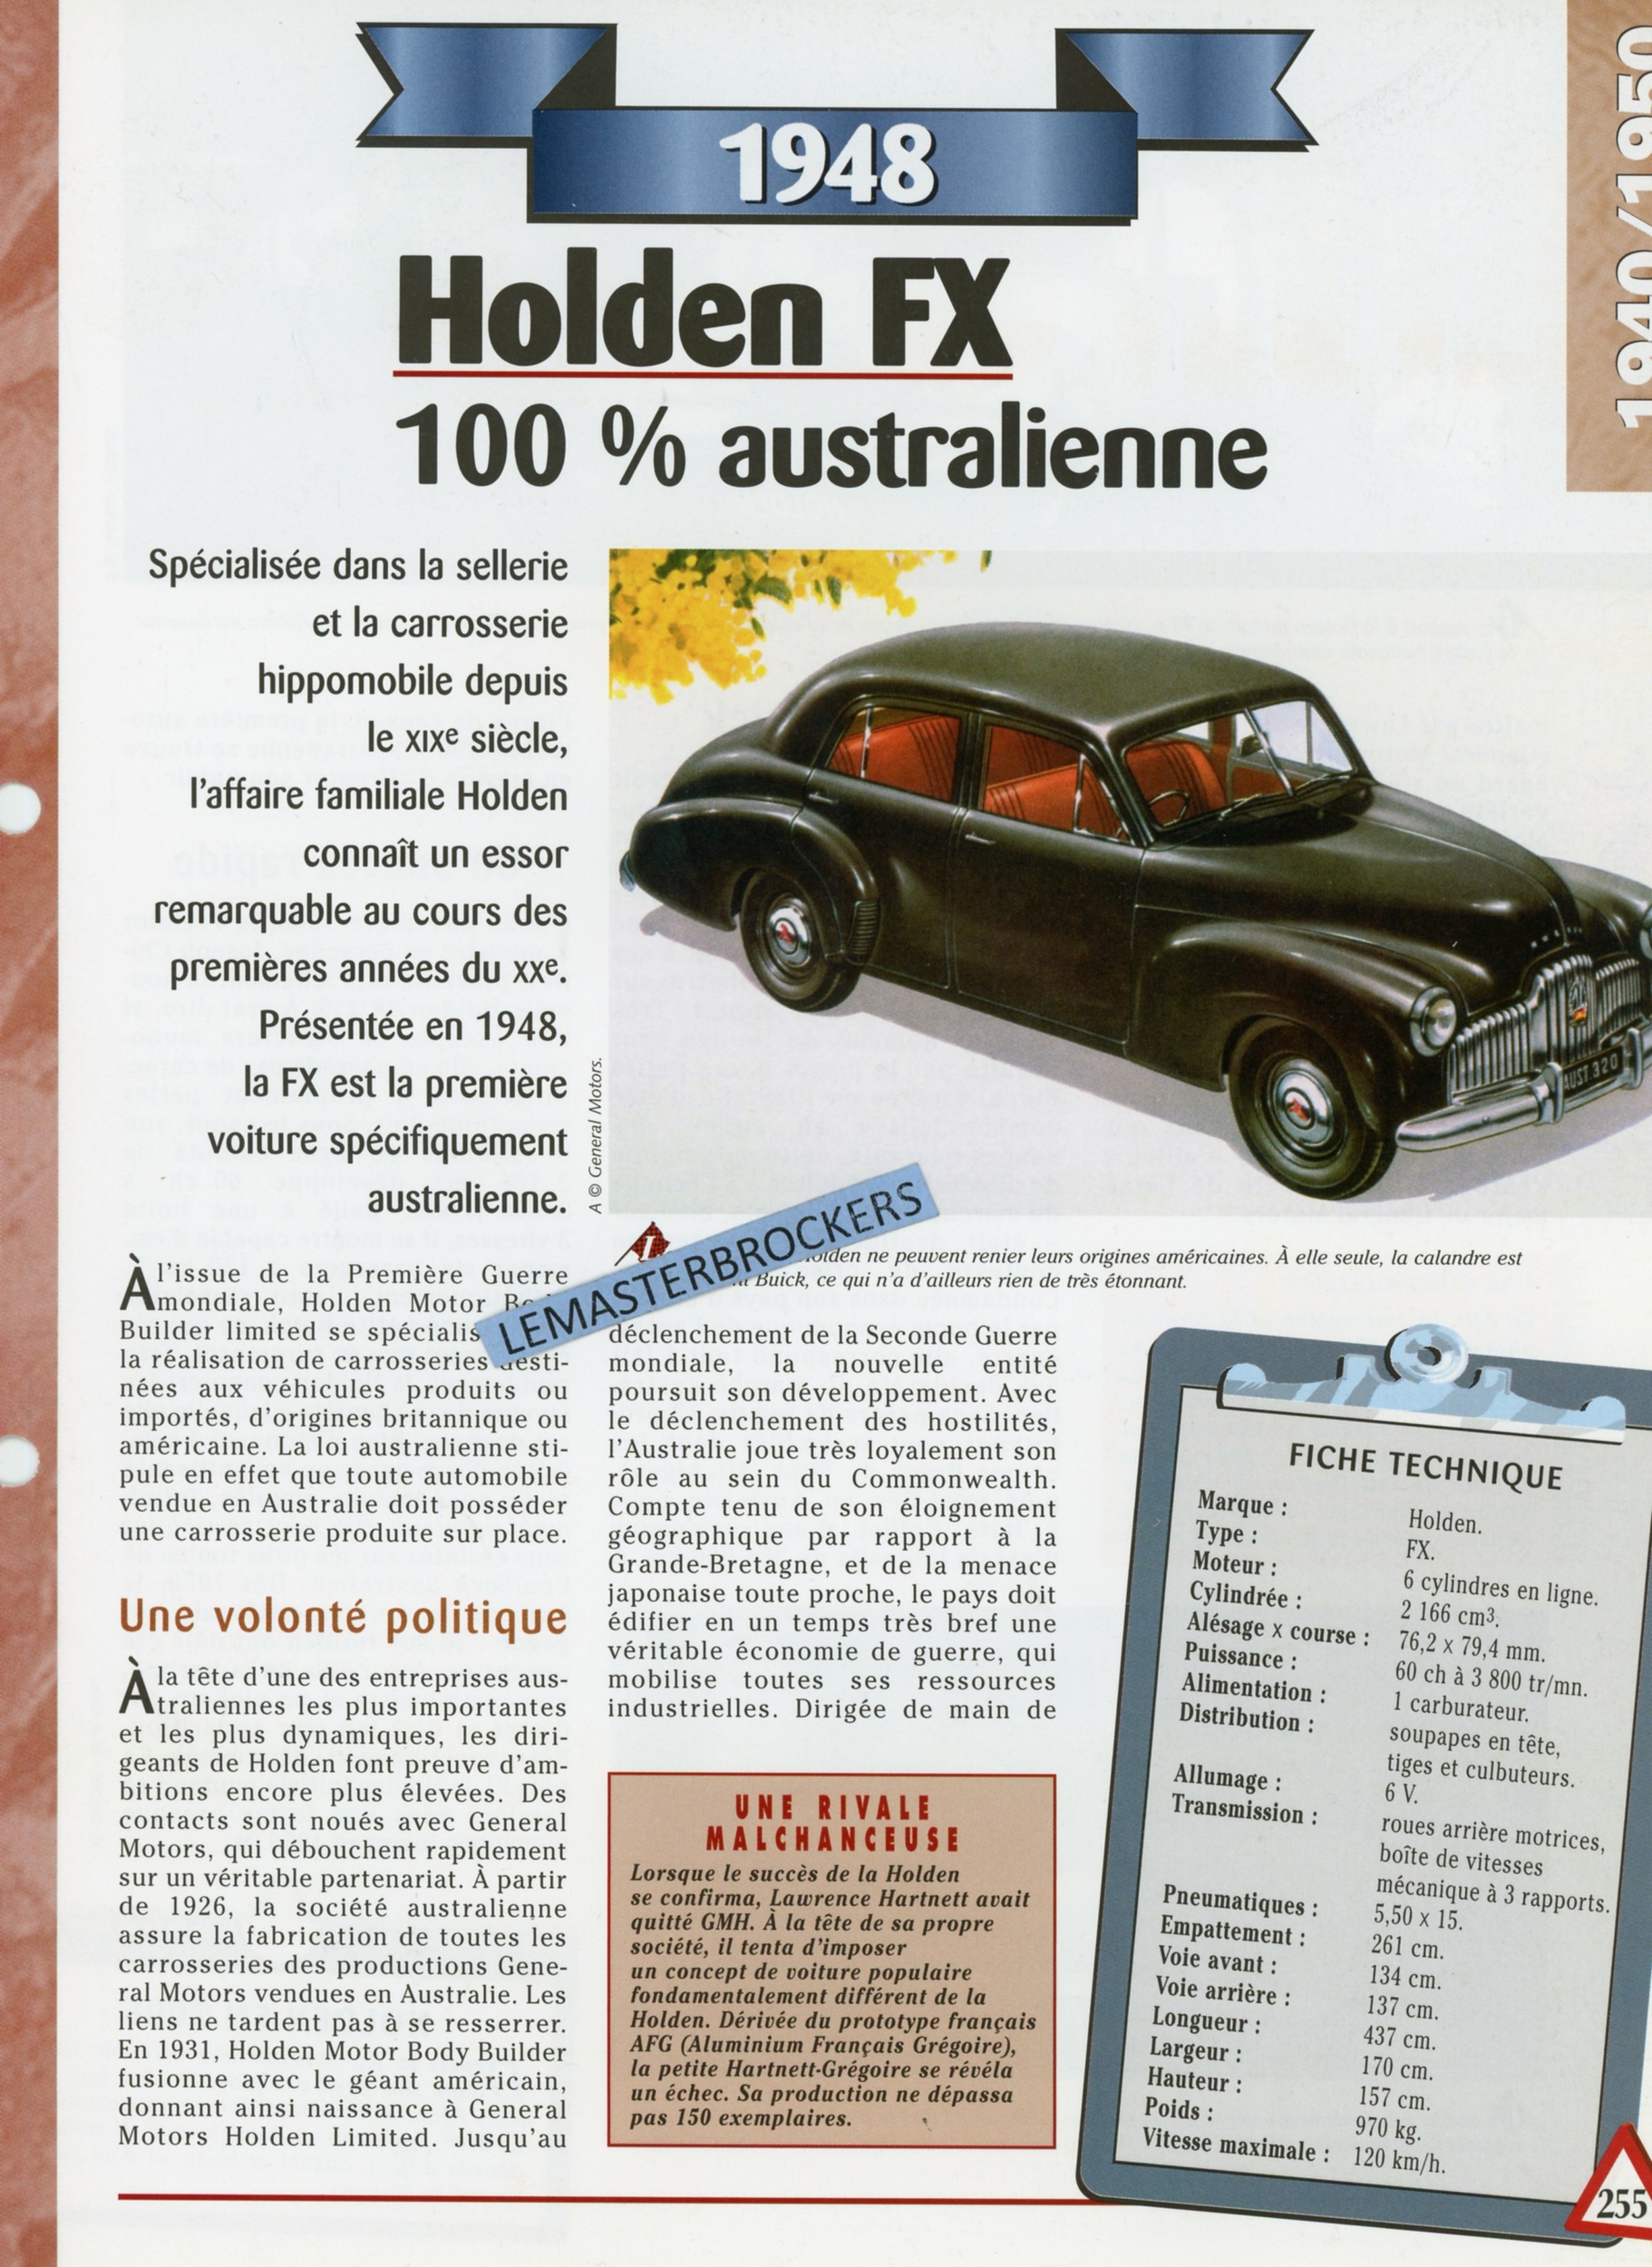 HOLDEN-FX-1948-FICHE-TECHNIQUE-FICHE-AUTO-HACHETTE-LEMASTERBROCKERS